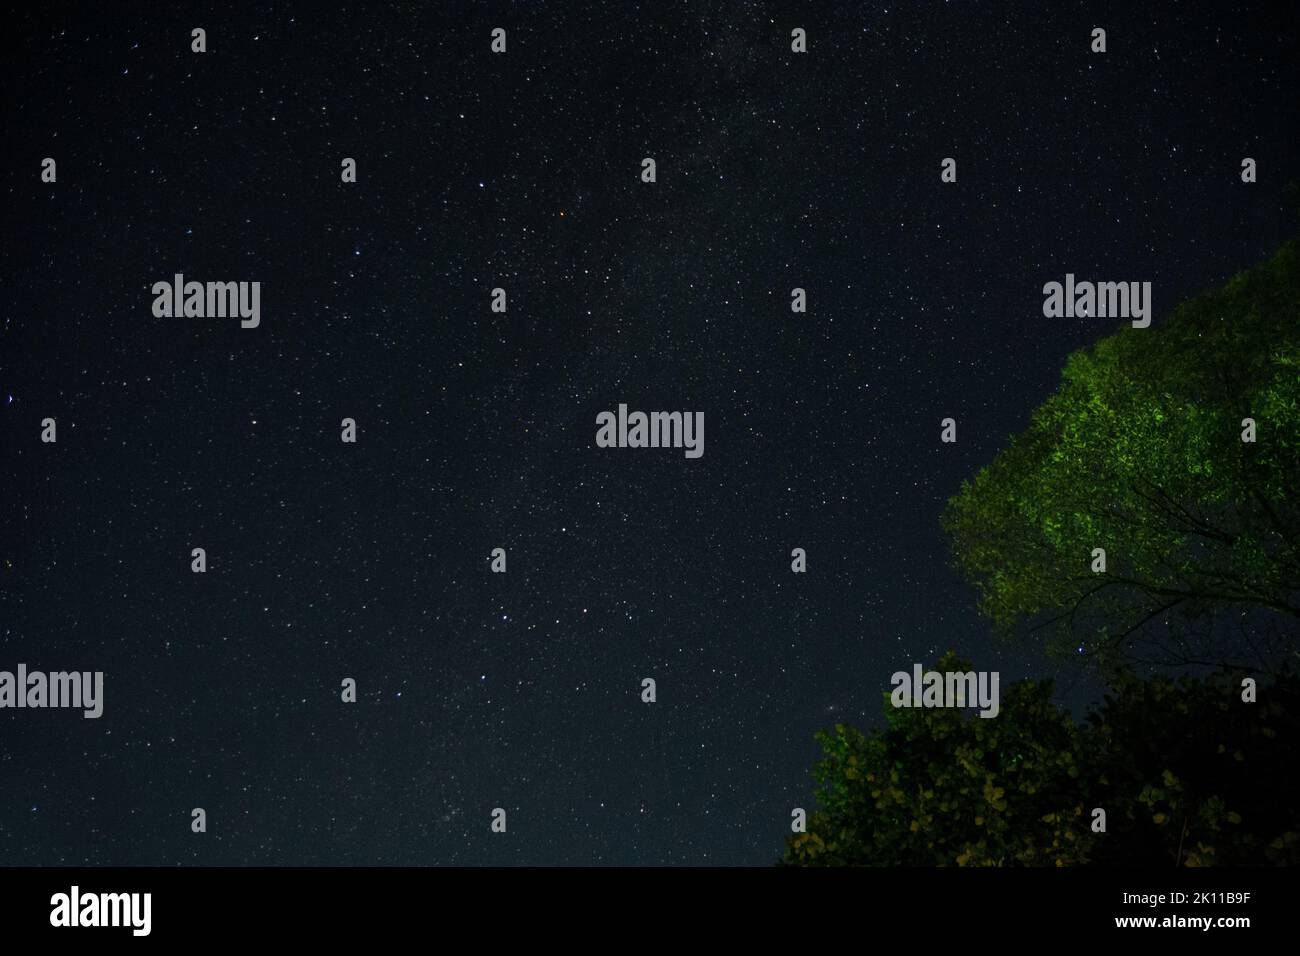 Beaucoup d'étoiles dans le ciel d'été de nuit et la galaxie de la voie lactée, photographiée de la forêt. Niveau de bruit élevé dû à une exposition prolongée Banque D'Images